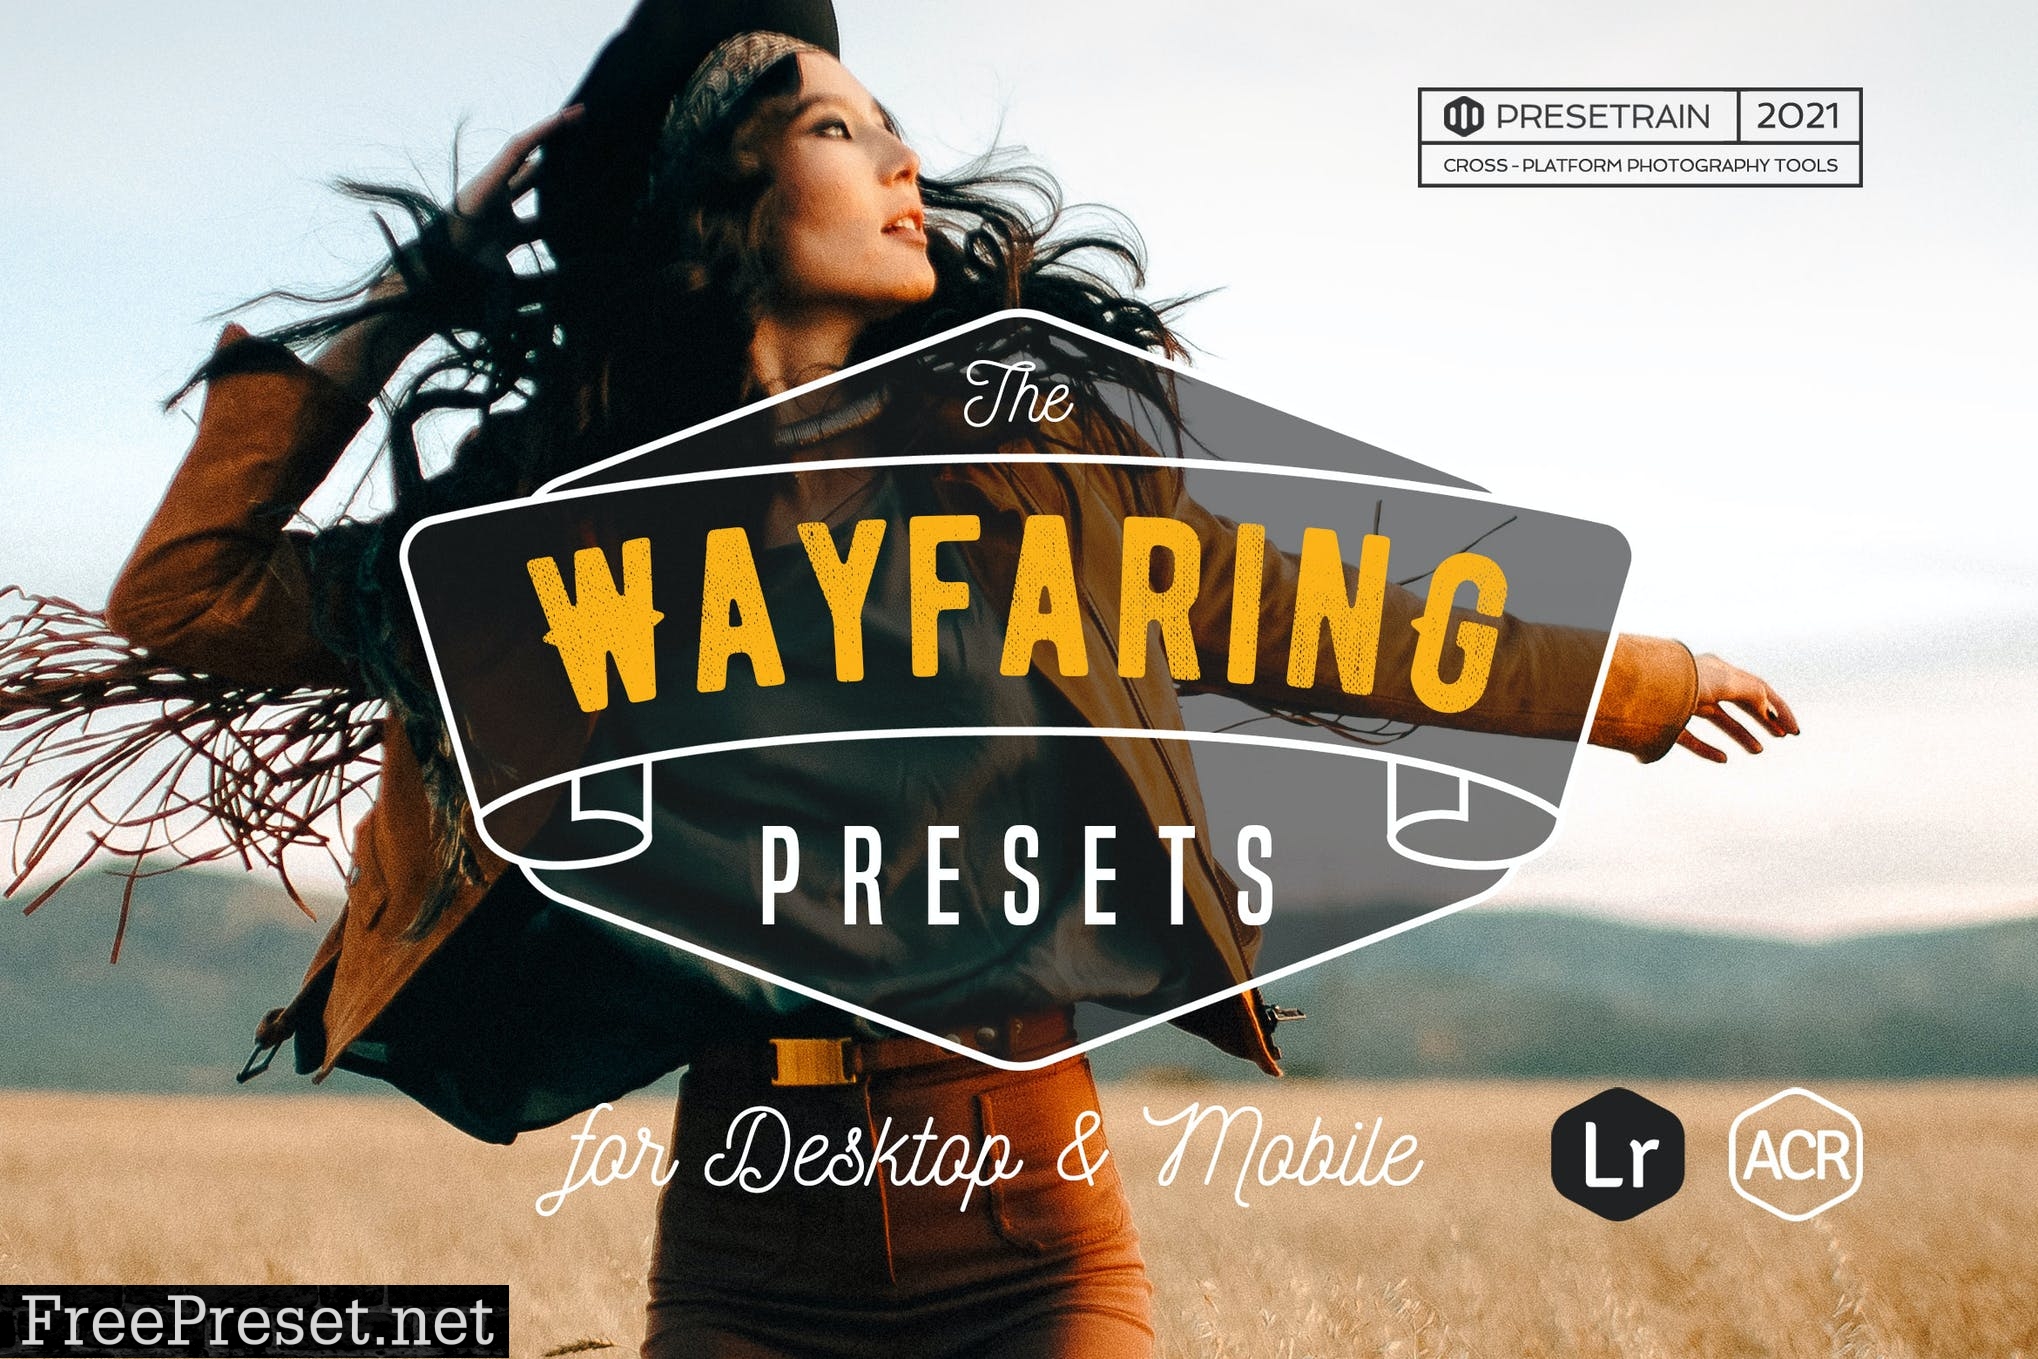 Wayfaring Lightroom Presets for Desktop & Mobile